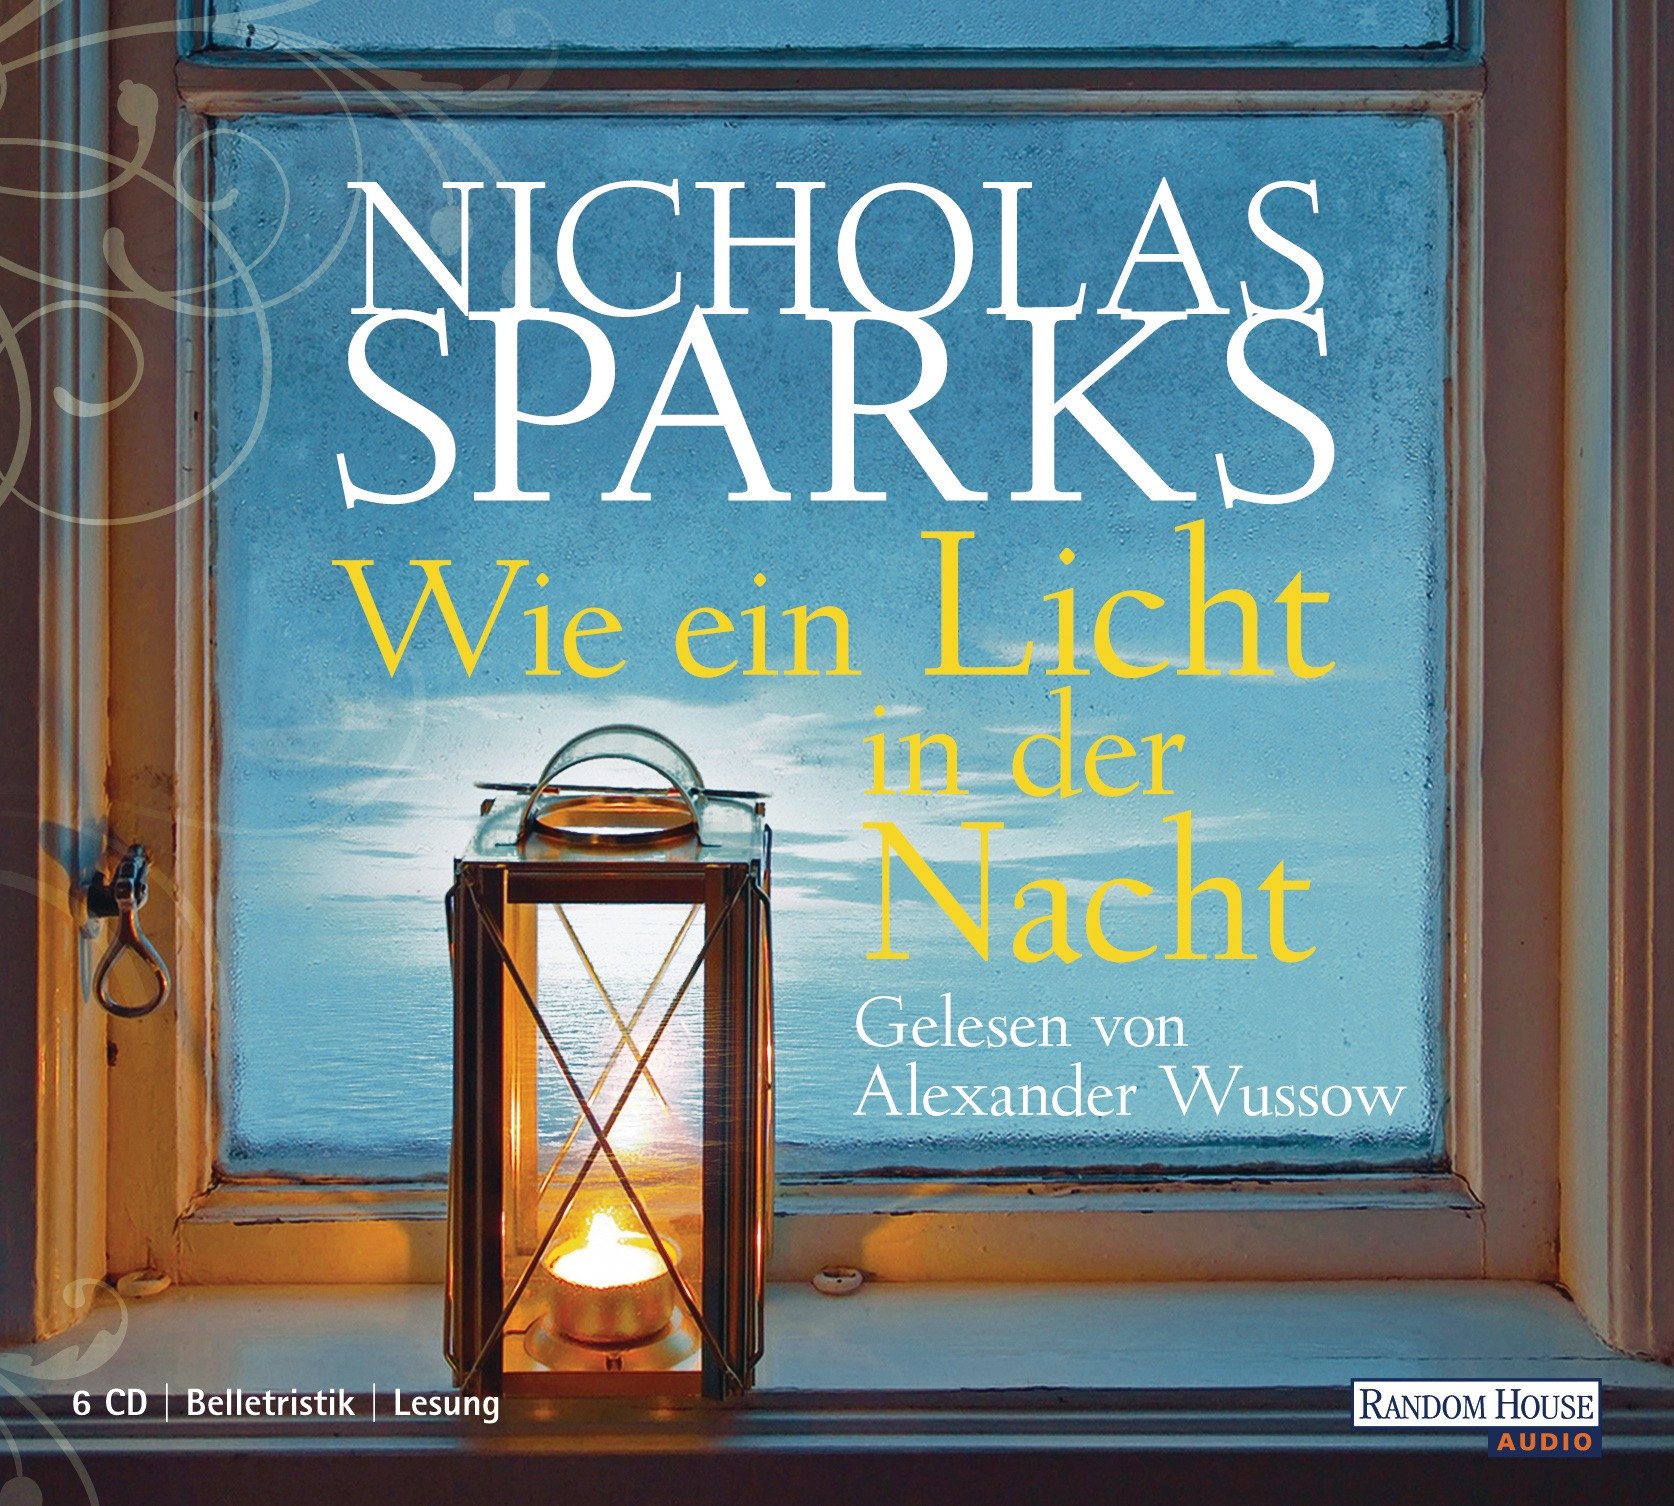 Nicholas Sparks - Wie ein Licht in der Nacht